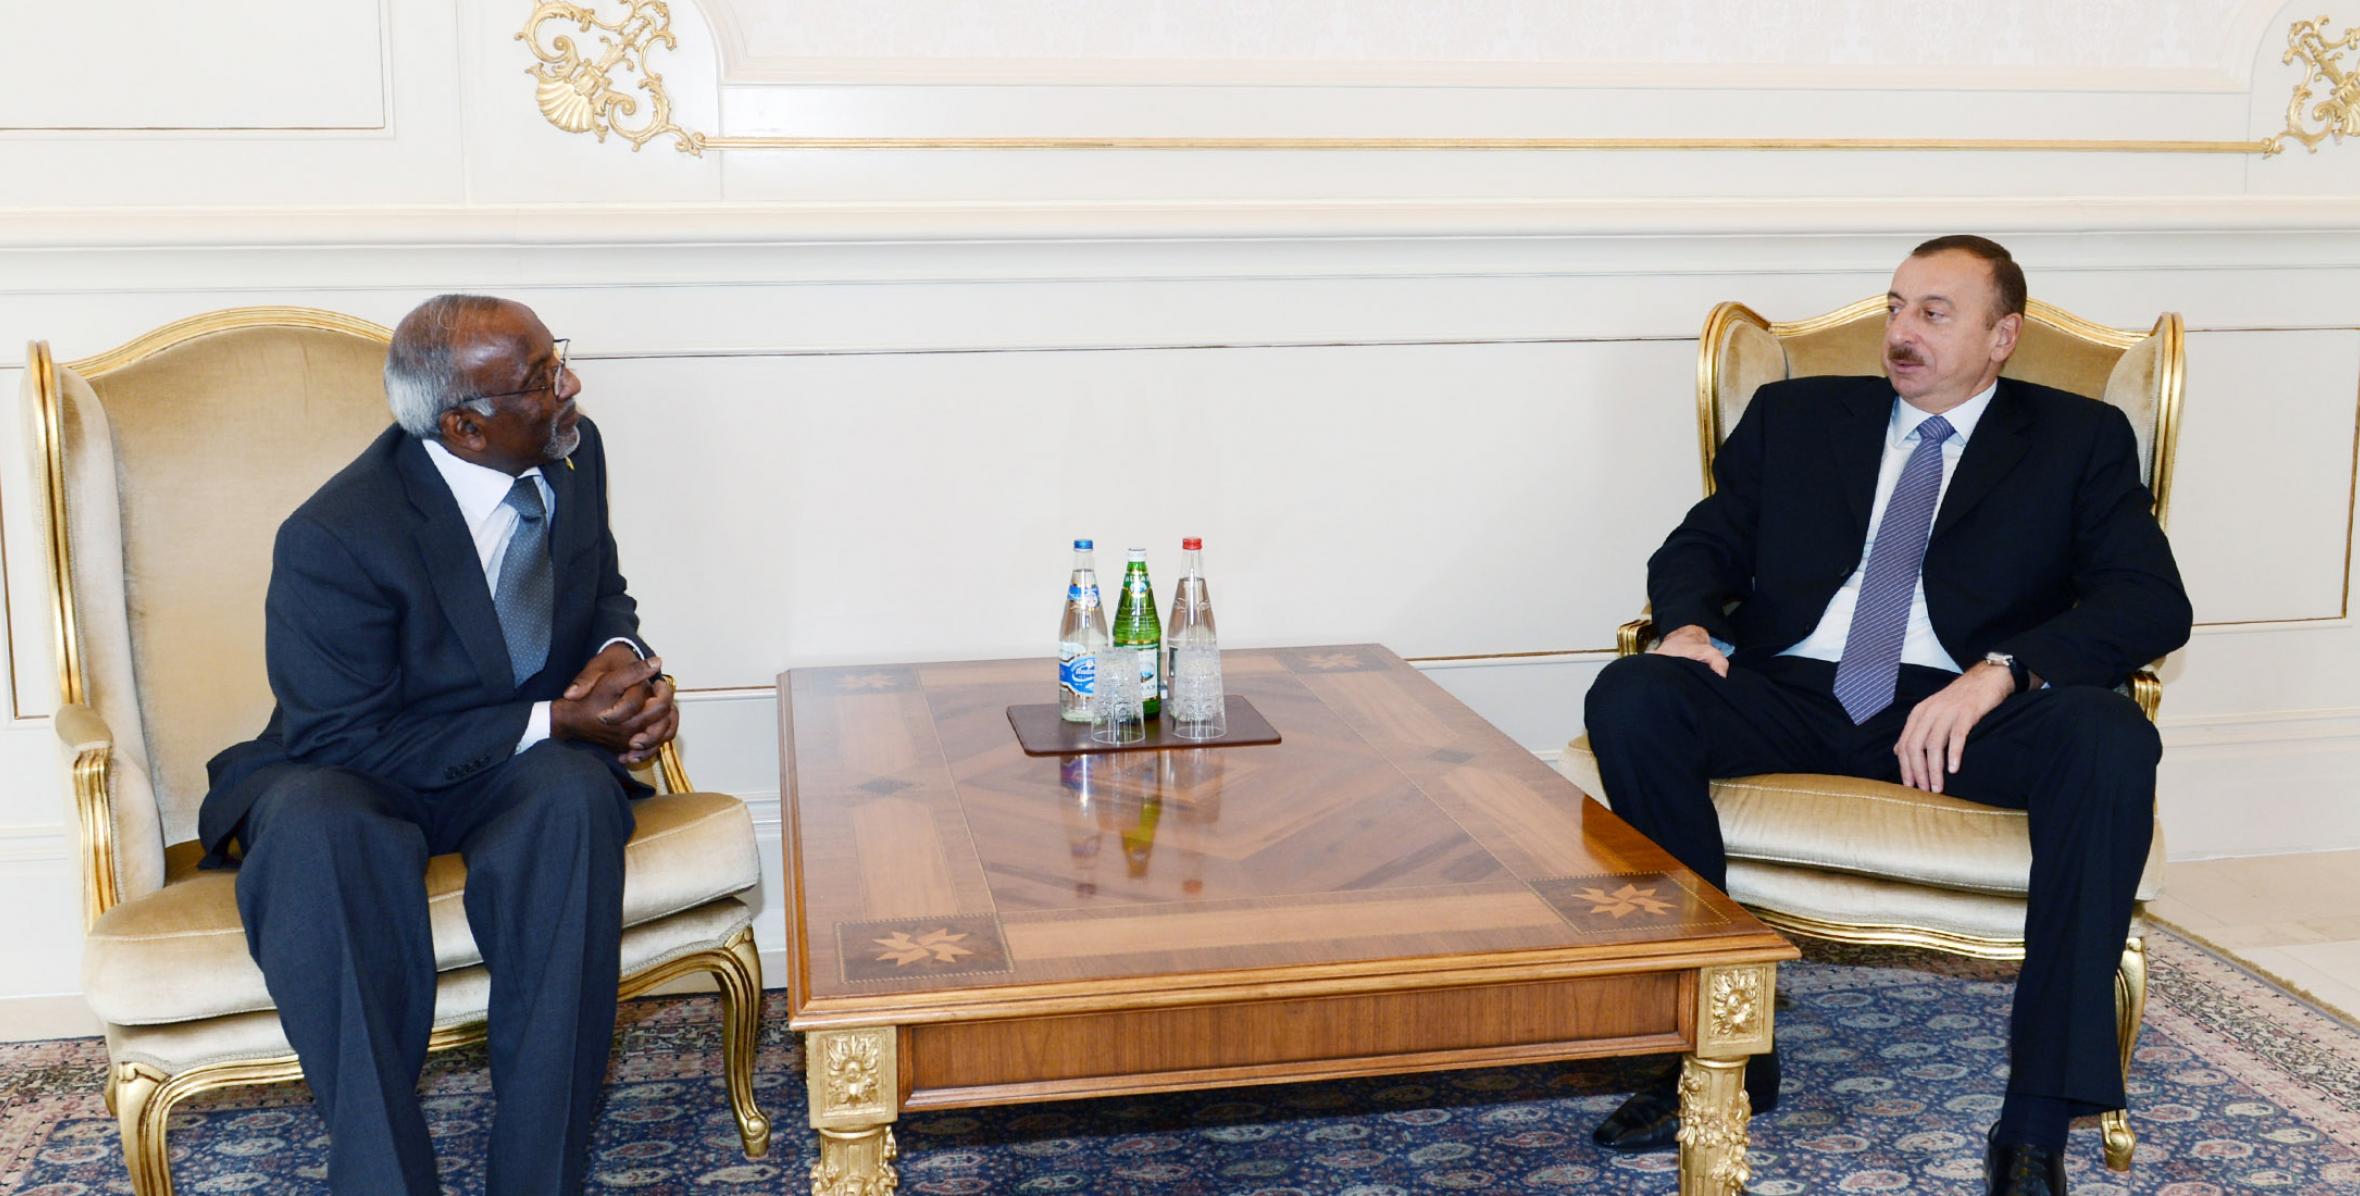 Ильхам Алиев принял верительные грамоты новоназначенного посла Сент-Винсента и Гренадин в Азербайджане